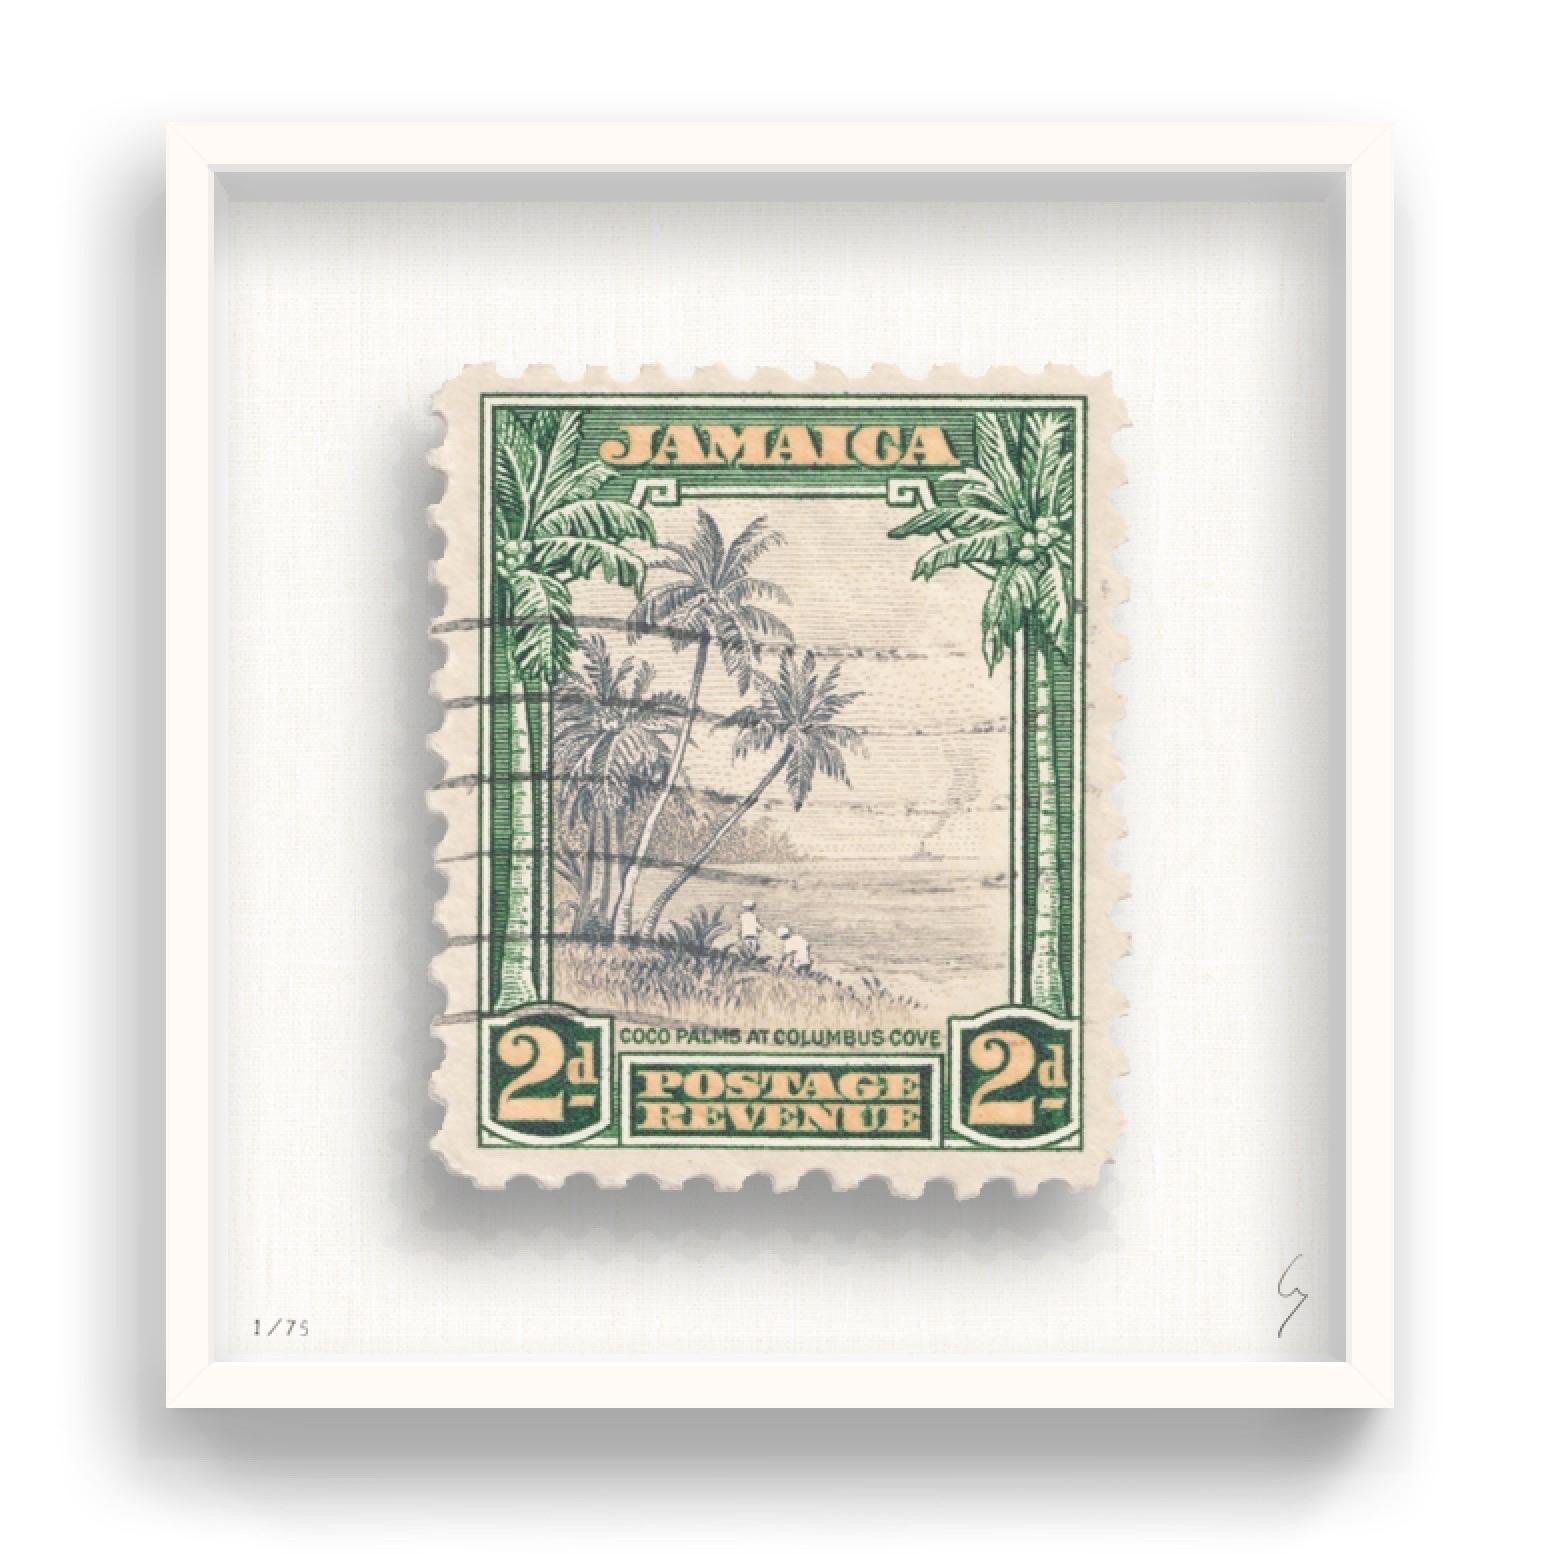 Guy Gee, Jamaica (medio)

Impresión grabada a mano en 350gsm sobre tarjeta G.F Smith
53 x 56 cm (20 4/5 x 22 2/5 pulg.)
Marco incluido 
Edición de 75 ejemplares 

Cada obra de Guy había sido reimaginada digitalmente a partir de un sello de correos